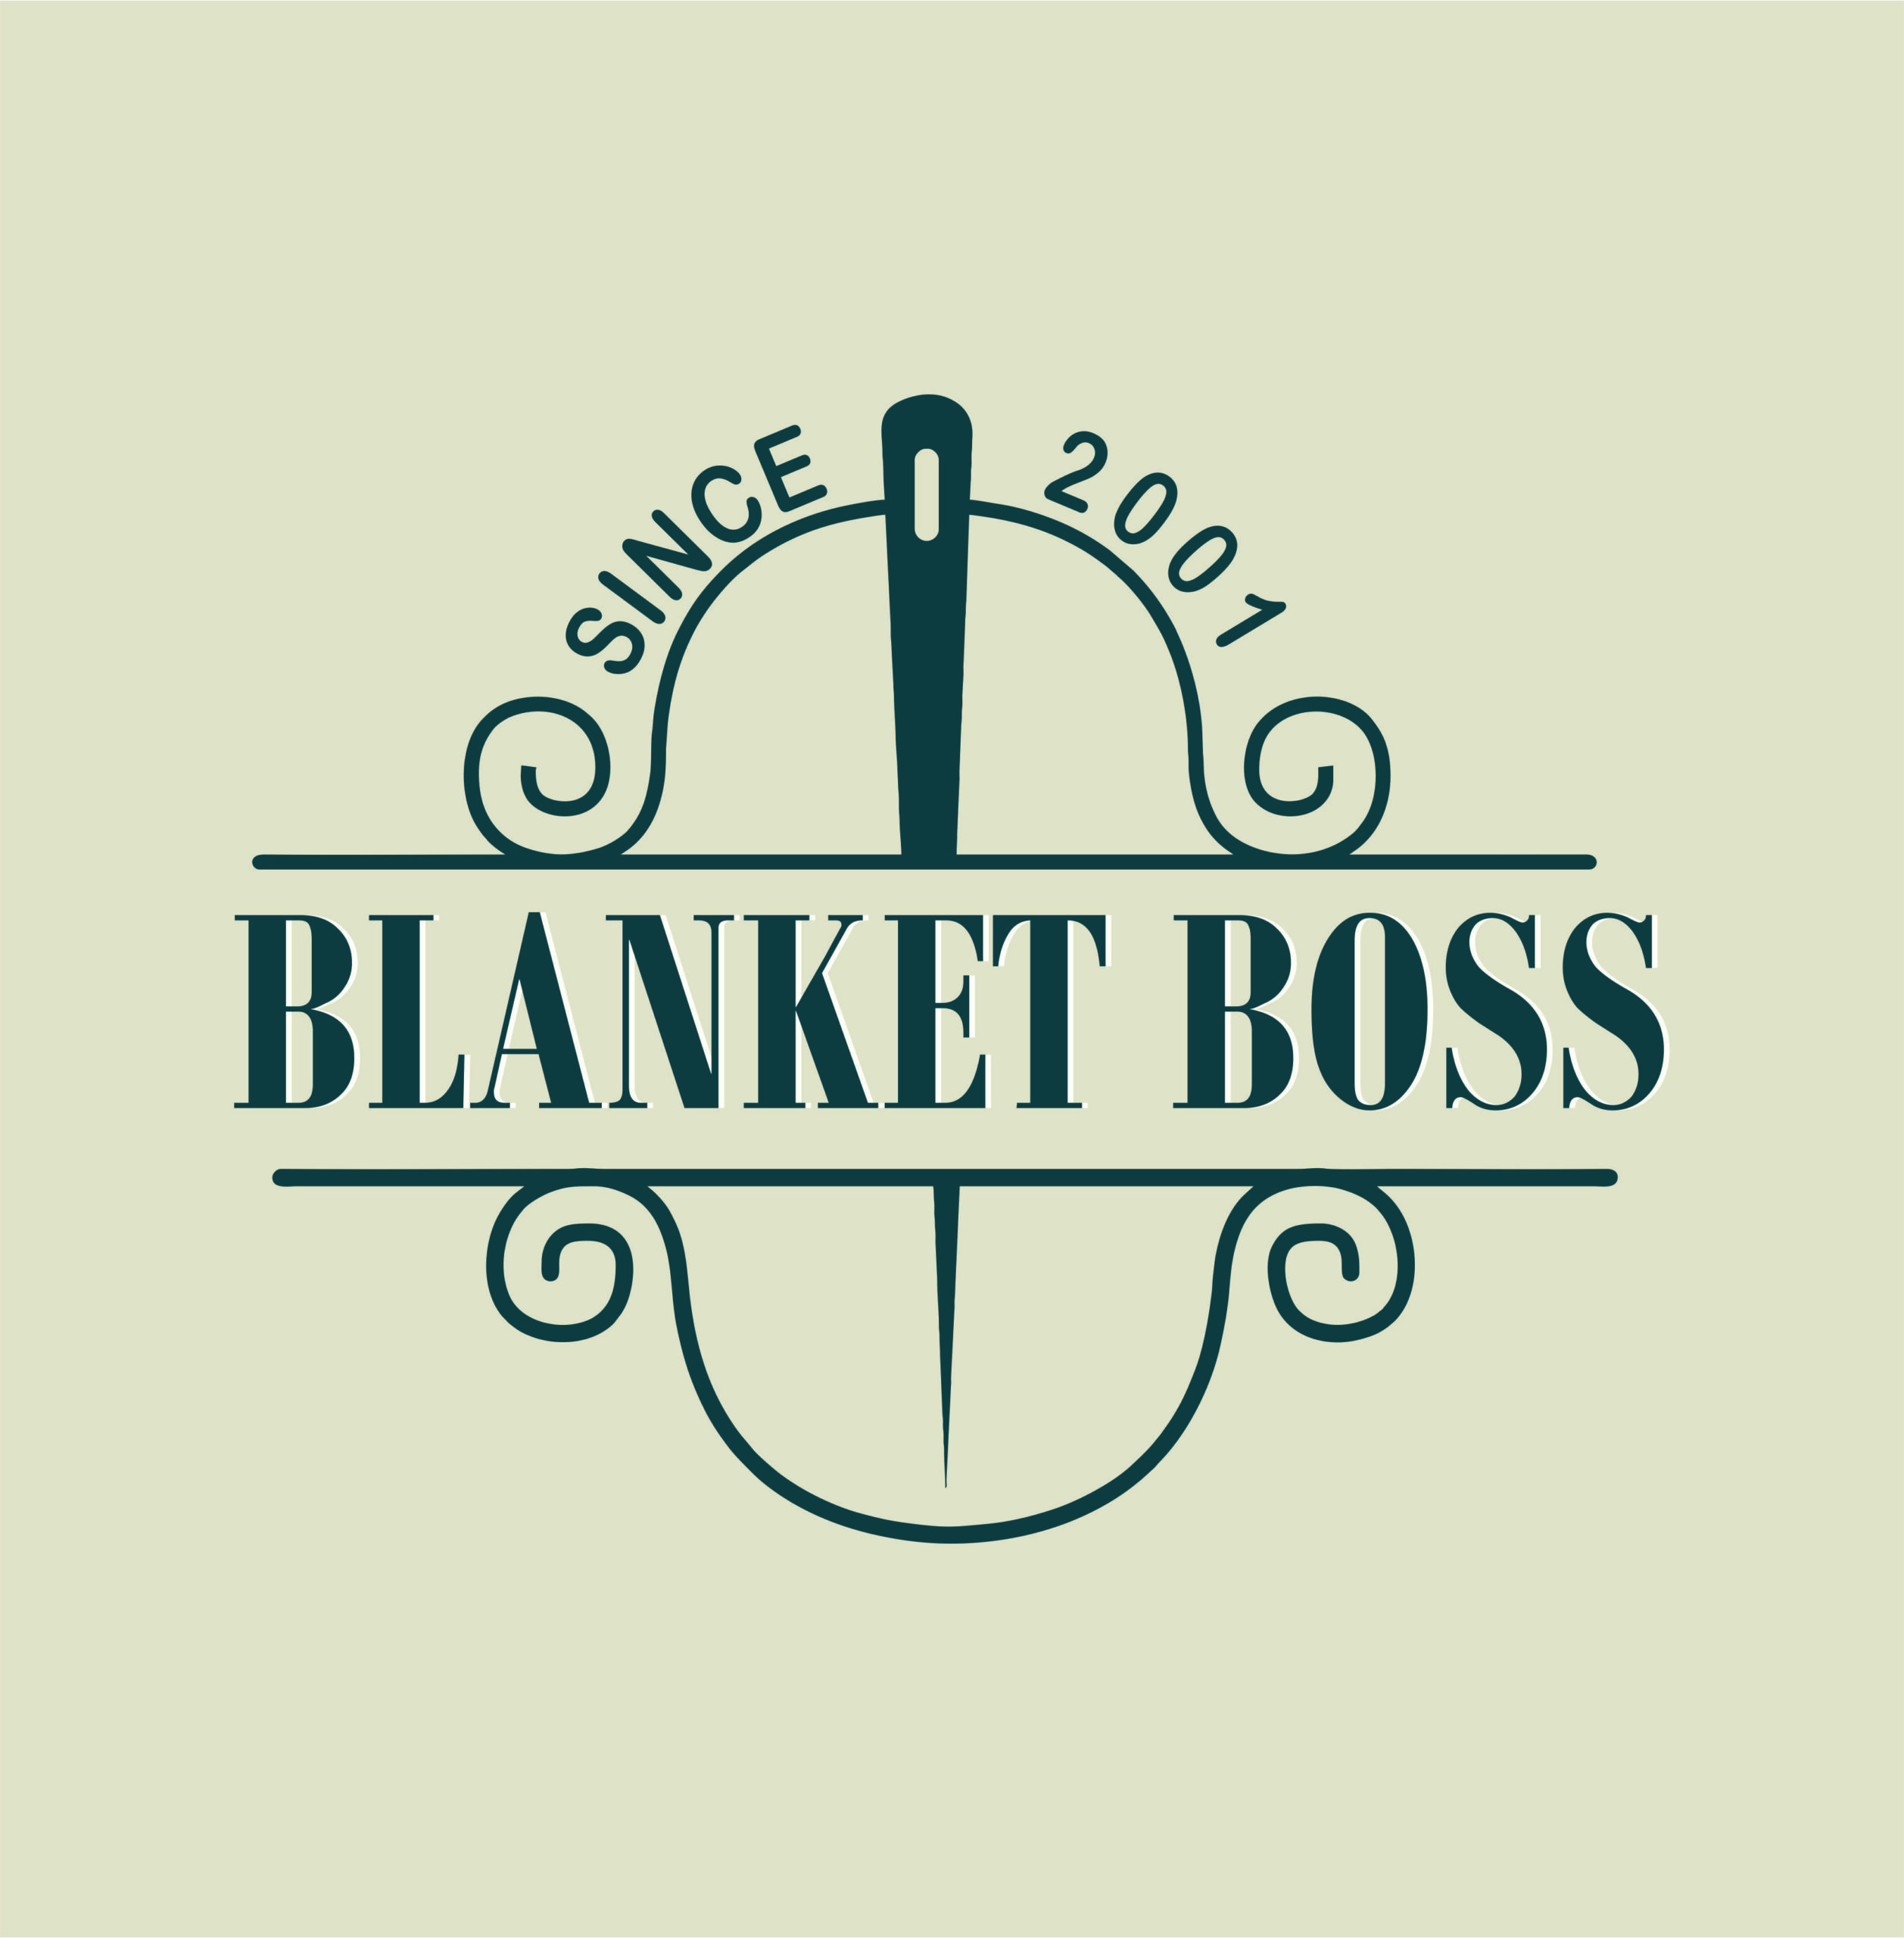 BlanketBoss